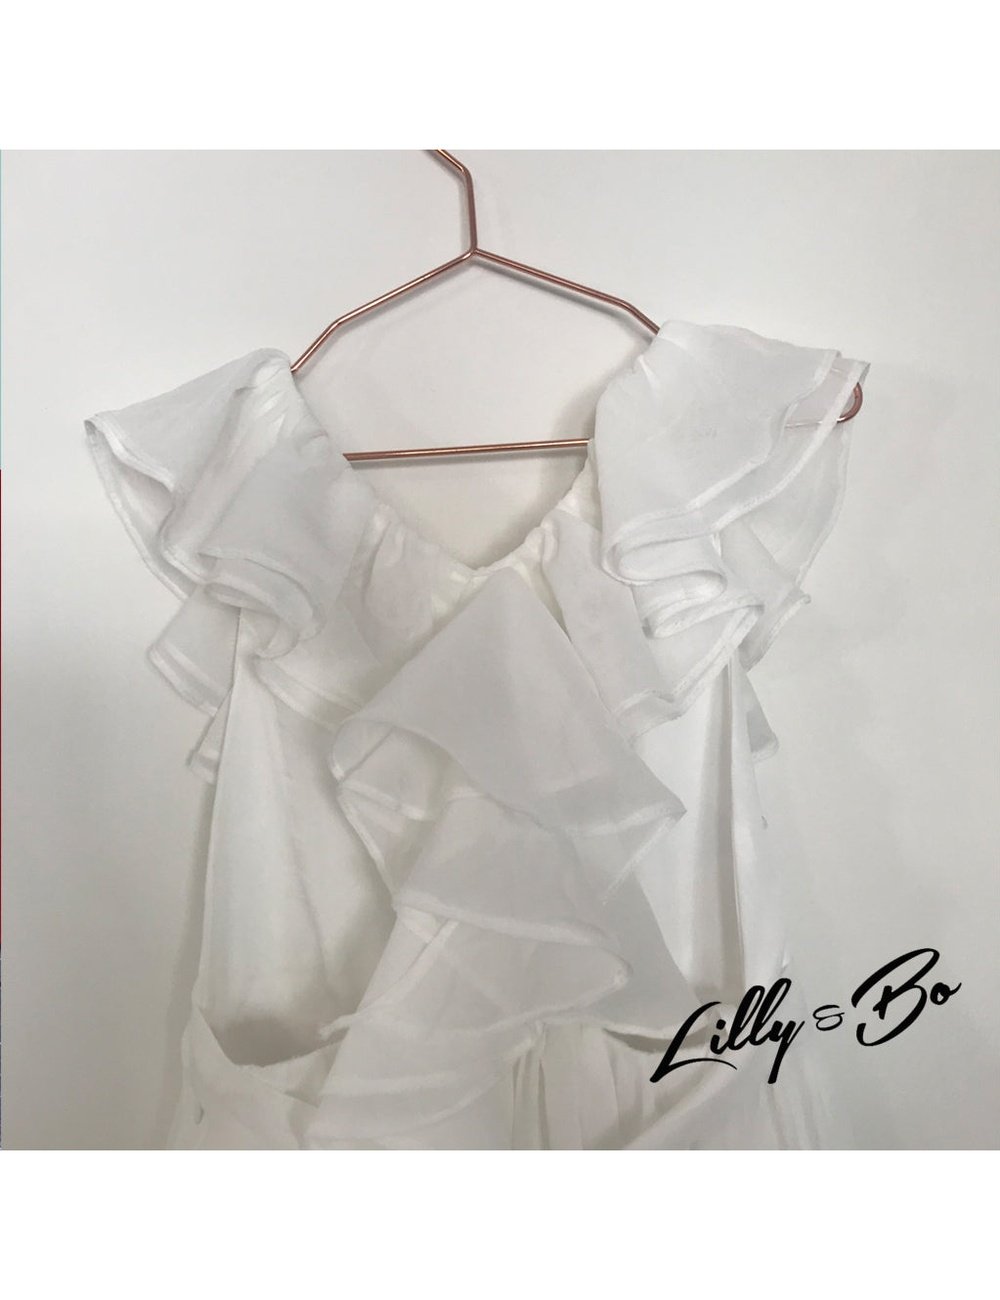 Etta - Flower Girl Dress in White